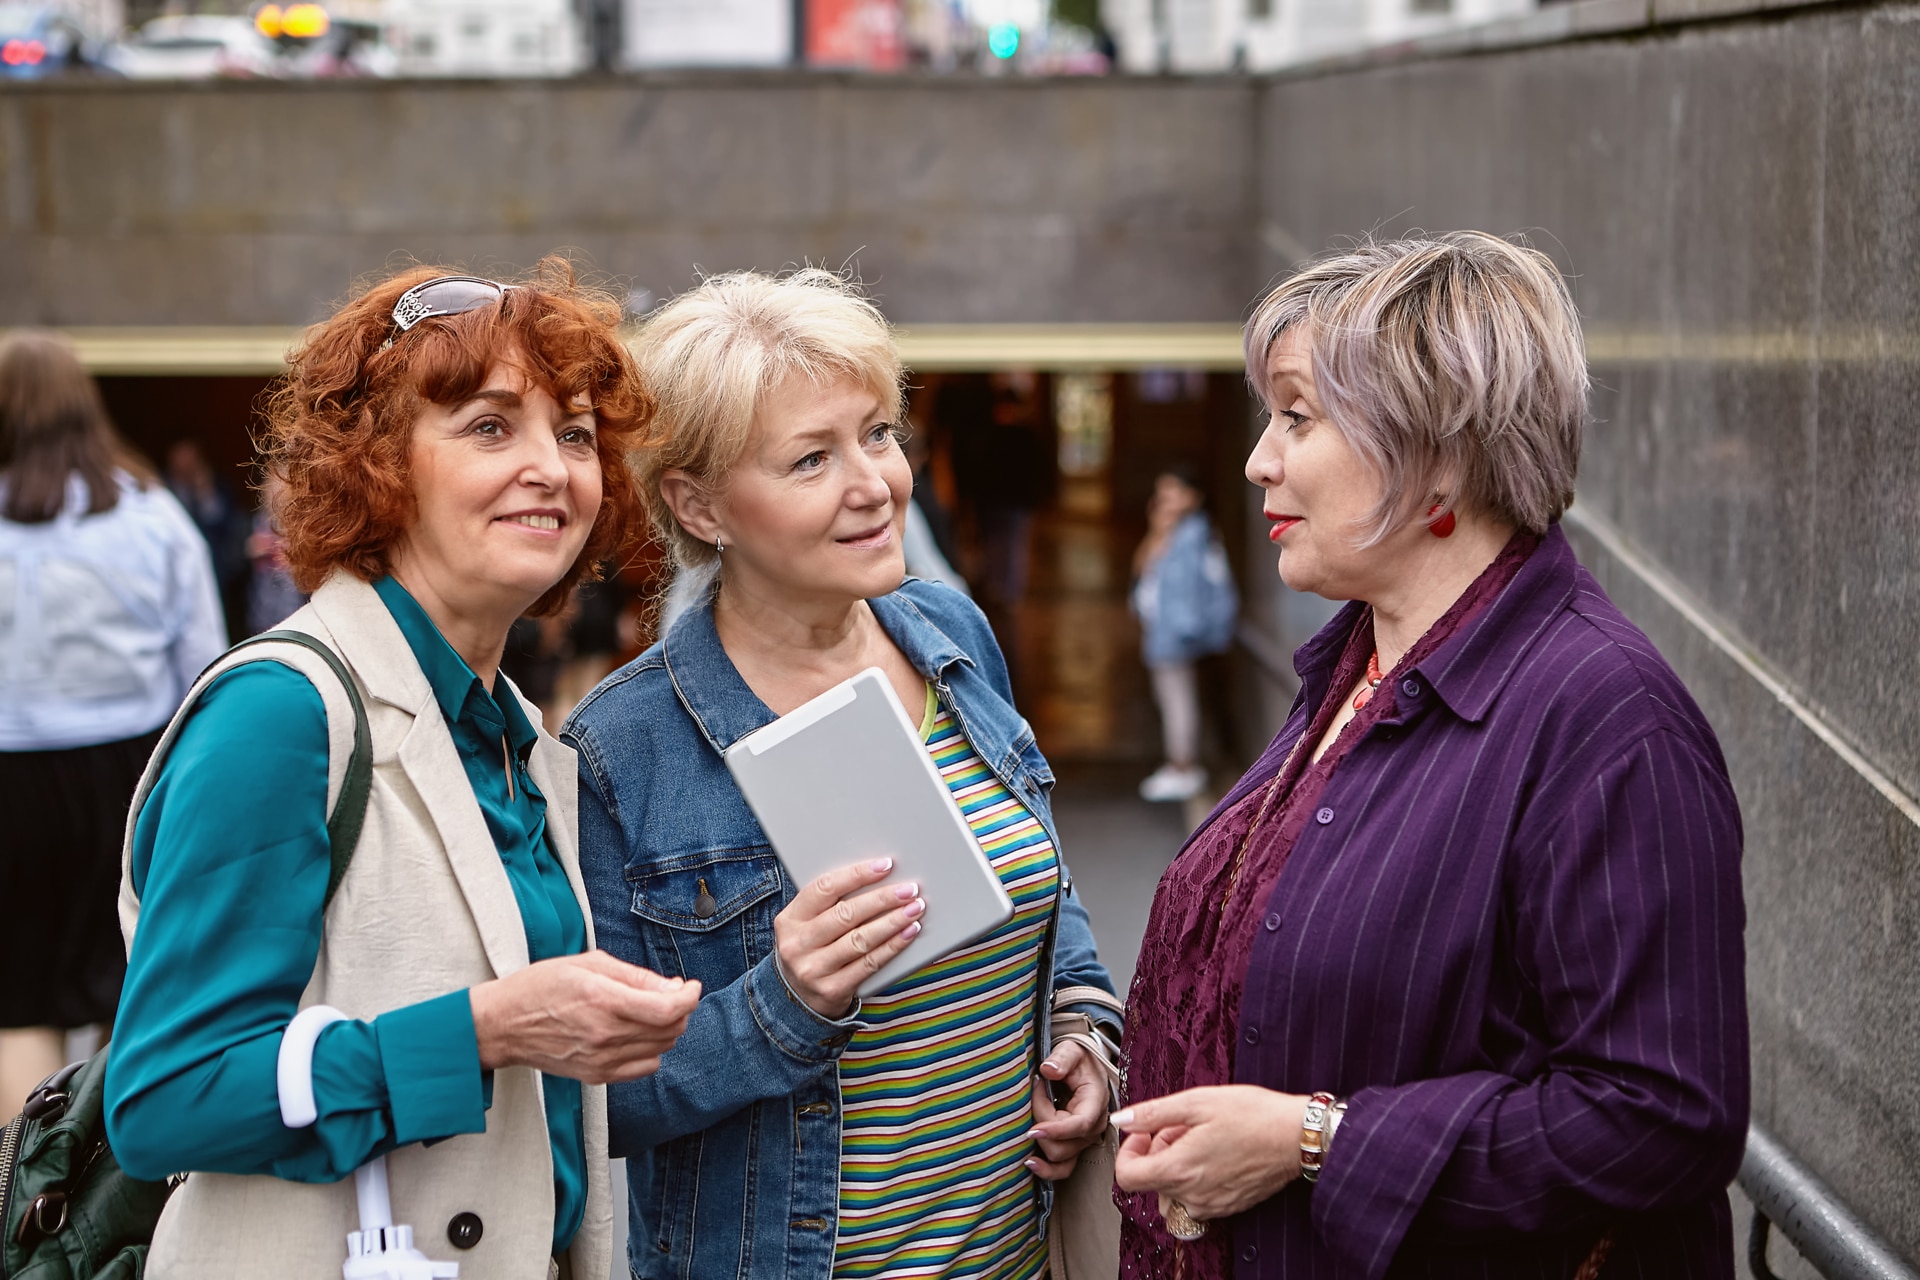 Three senior European women talk on the street near the descent to the underpass.